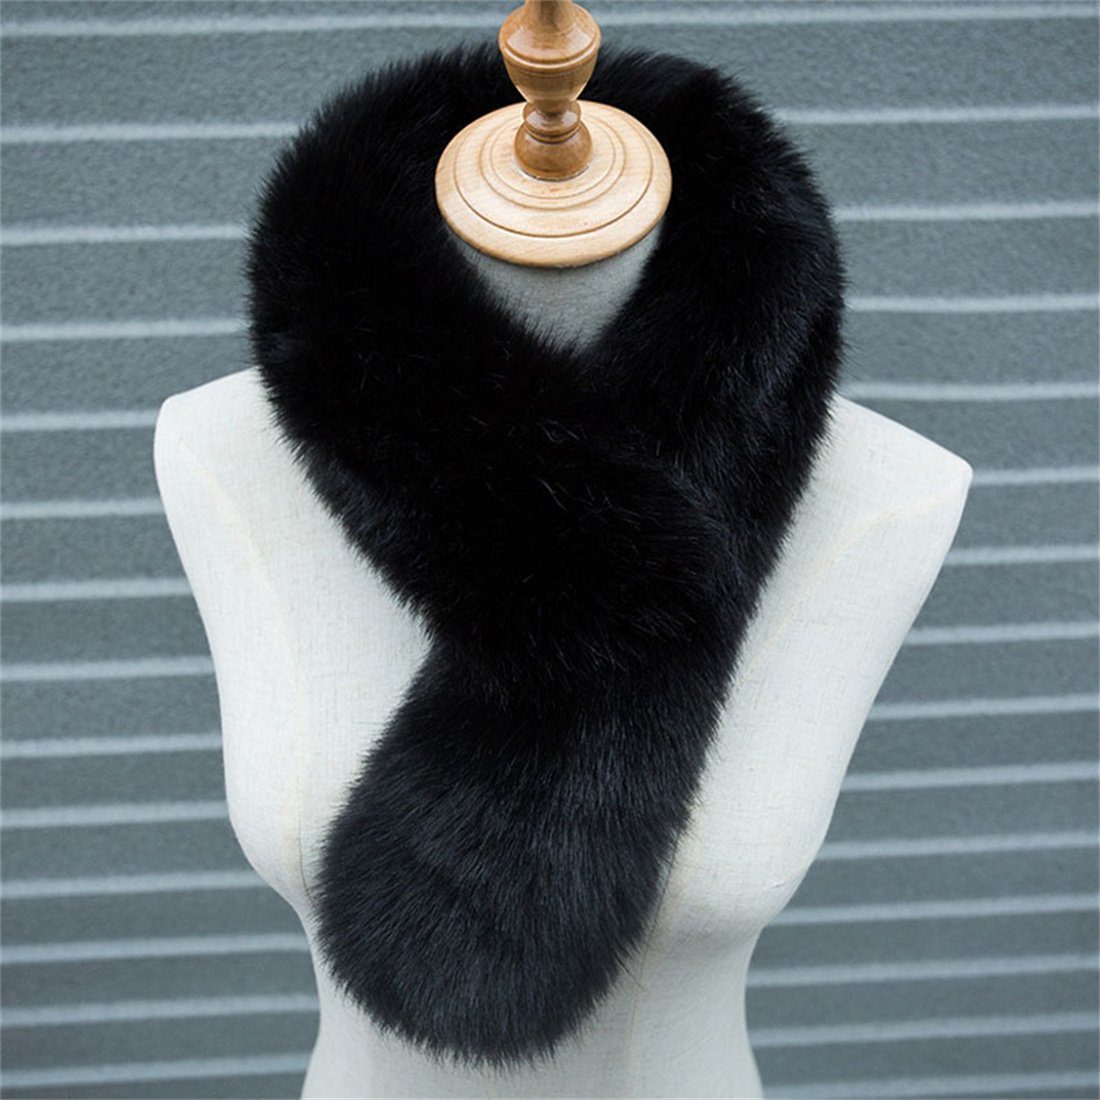 verdickt Pelz DÖRÖY warm Winter Modeschal Damen Schal,Nachahmung einfarbigSchal Plüsch